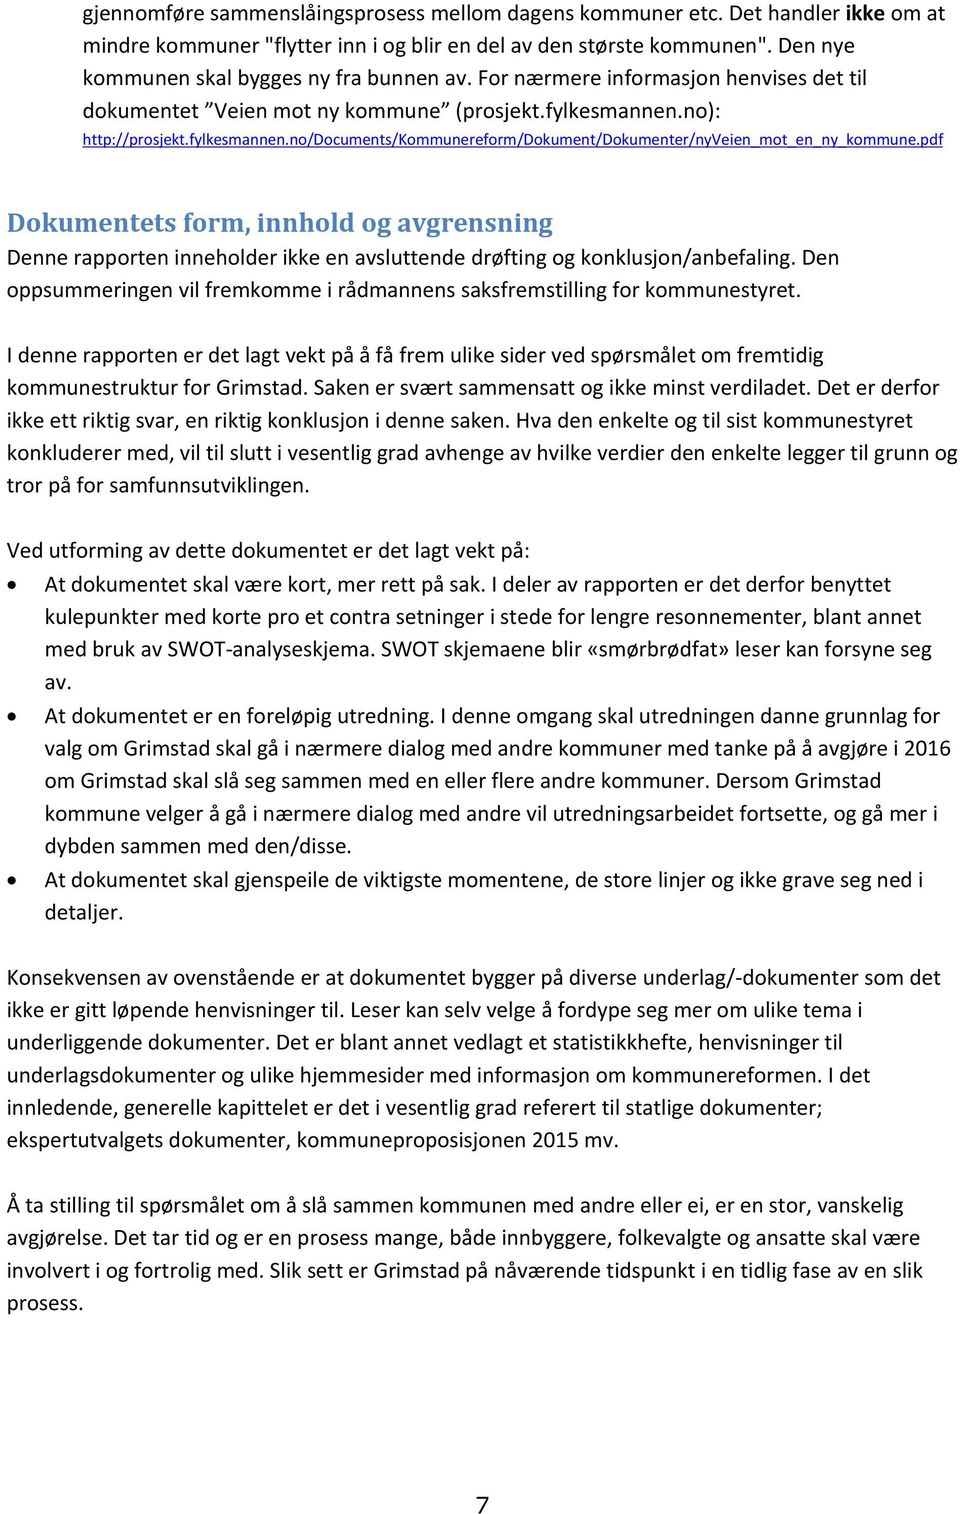 no): http://prosjekt.fylkesmannen.no/documents/kommunereform/dokument/dokumenter/nyveien_mot_en_ny_kommune.